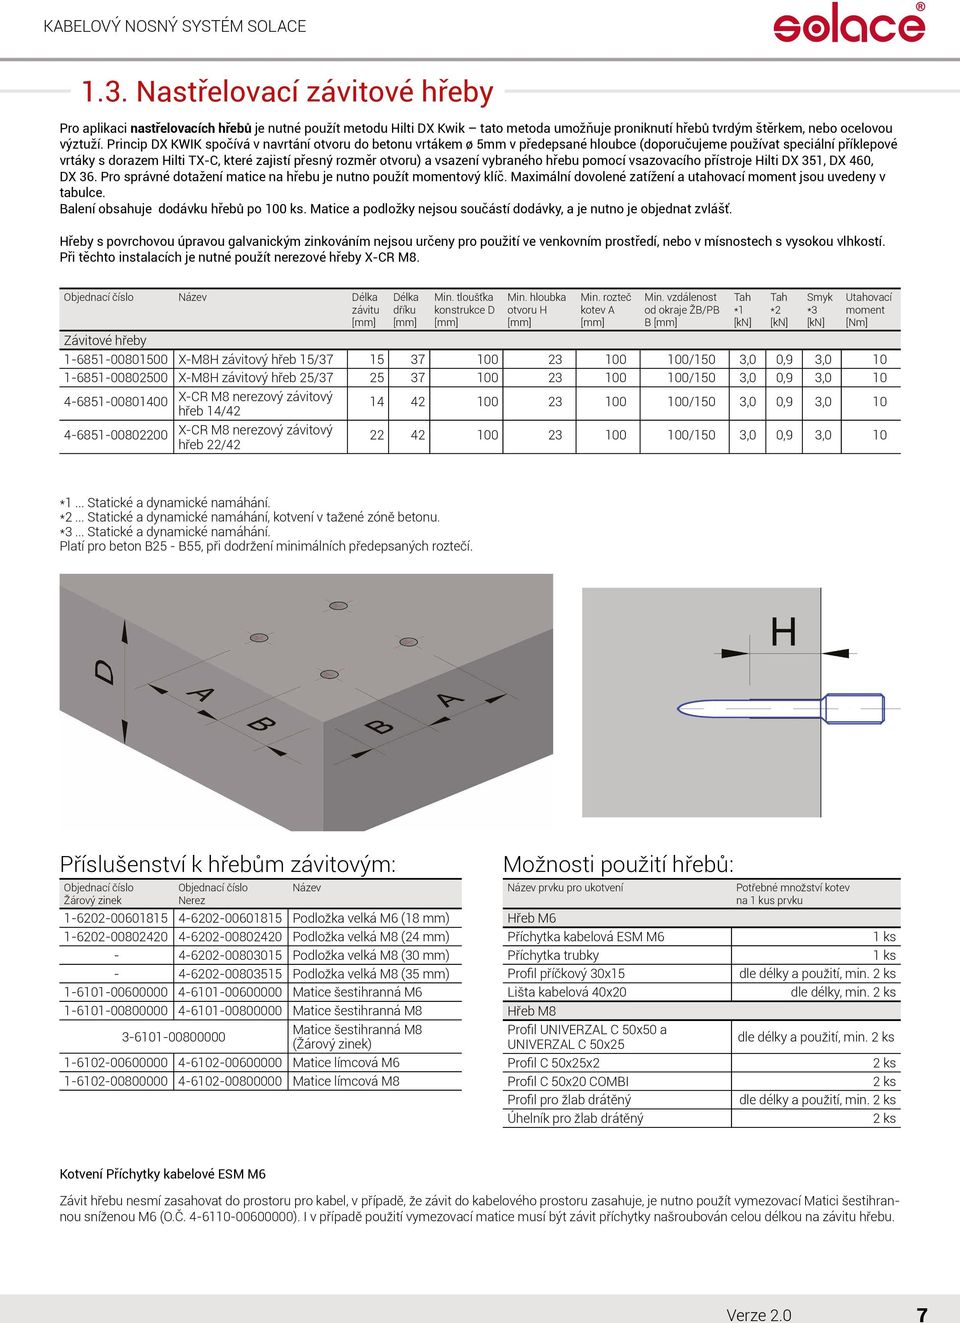 Princip DX KWIK spočívá v navrtání otvoru do betonu vrtákem ø 5mm v předepsané hloubce (doporučujeme používat speciální příklepové vrtáky s dorazem Hilti TX-C, které zajistí přesný rozměr otvoru) a